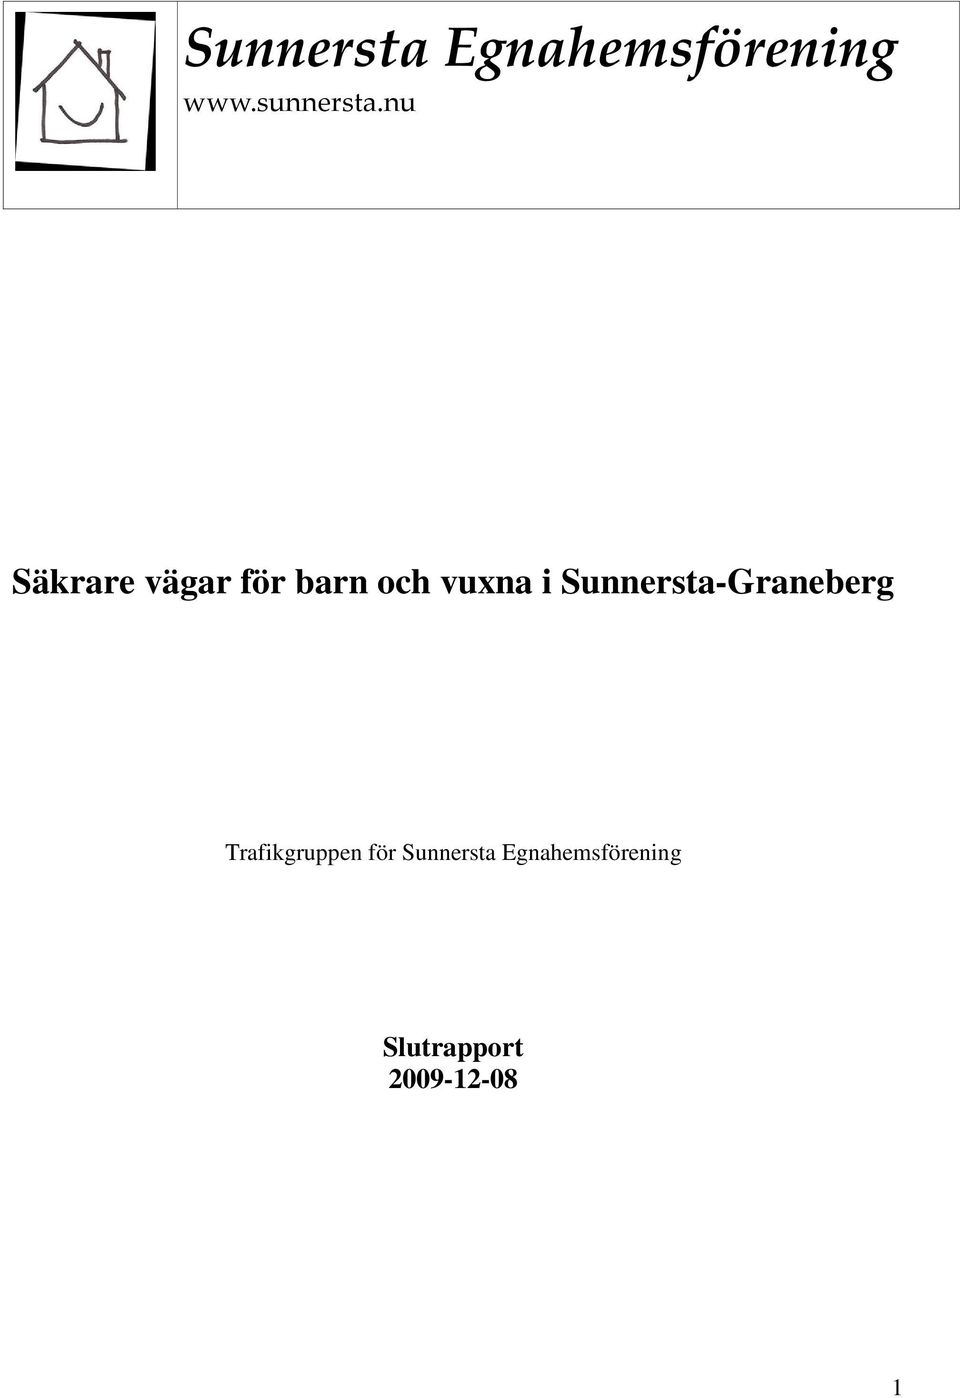 Sunnersta-Graneberg Trafikgruppen för